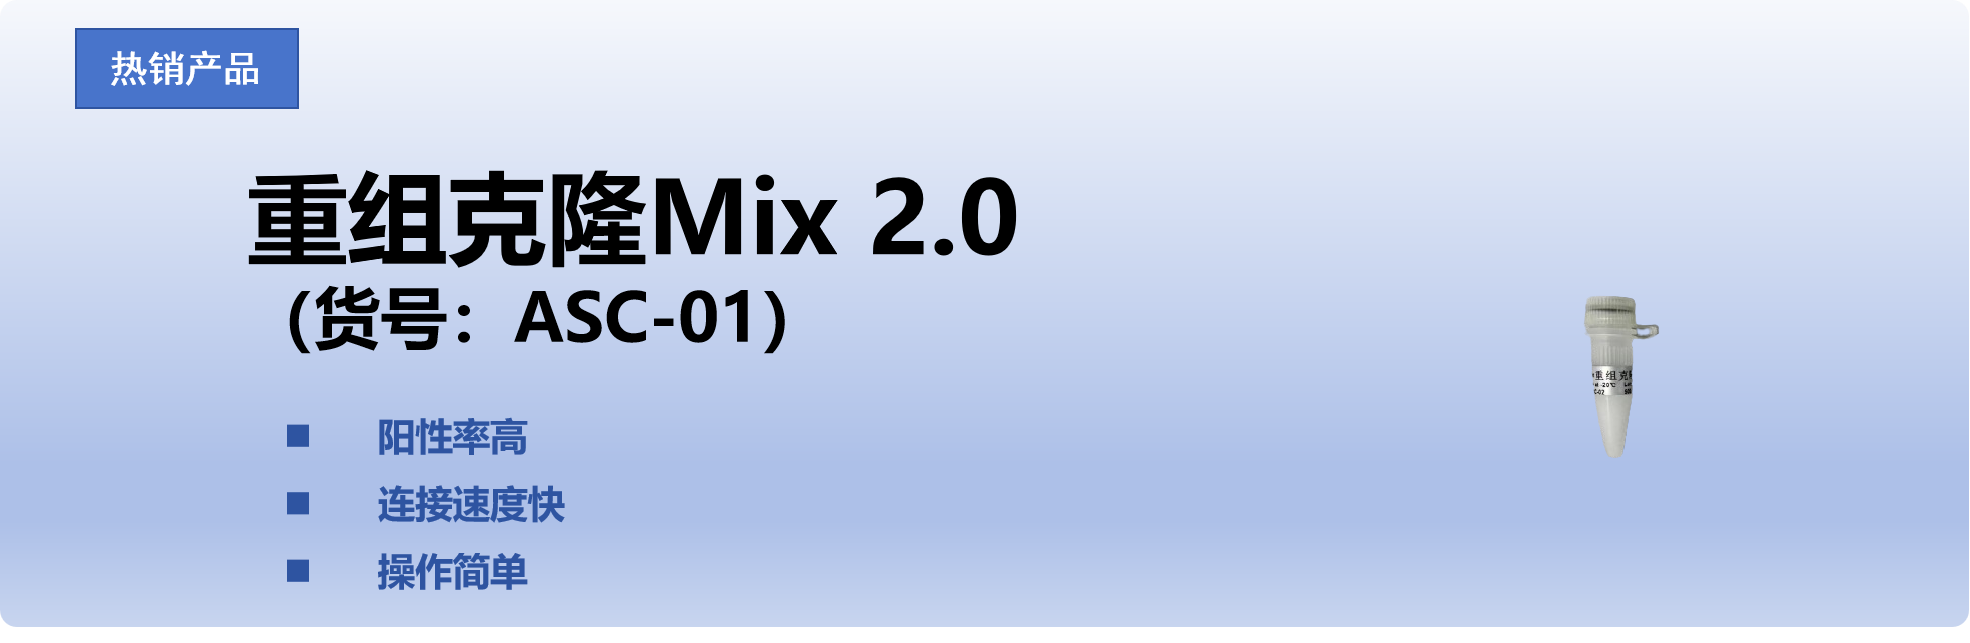 重组克隆Mix 2.0